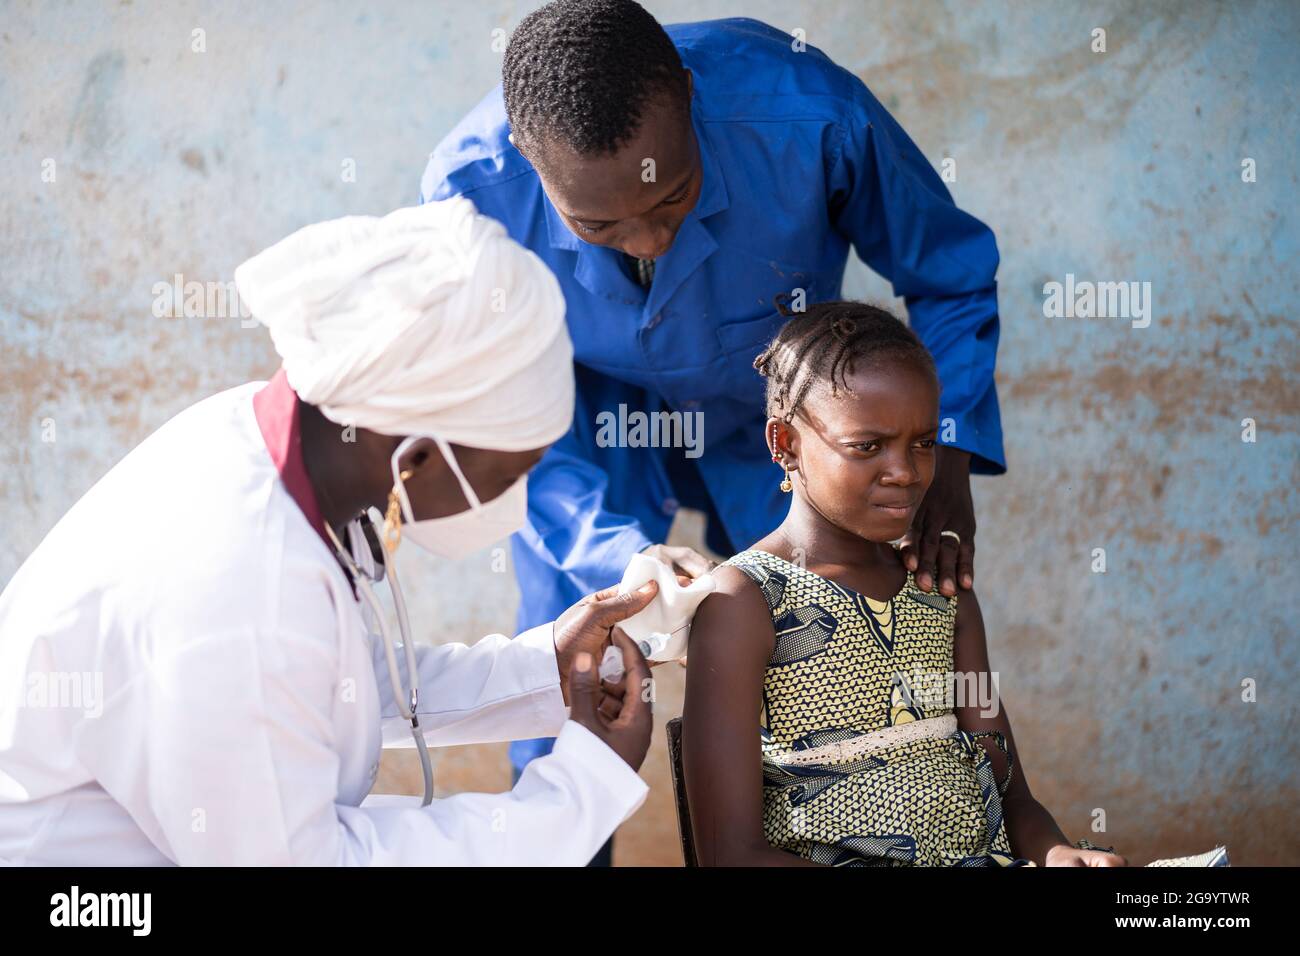 Dans cette image, une petite fille africaine, très inquiète et presque effrayée, est en train de se faire vacciner et réconfortée par un couple de professionnels de santé noirs Banque D'Images